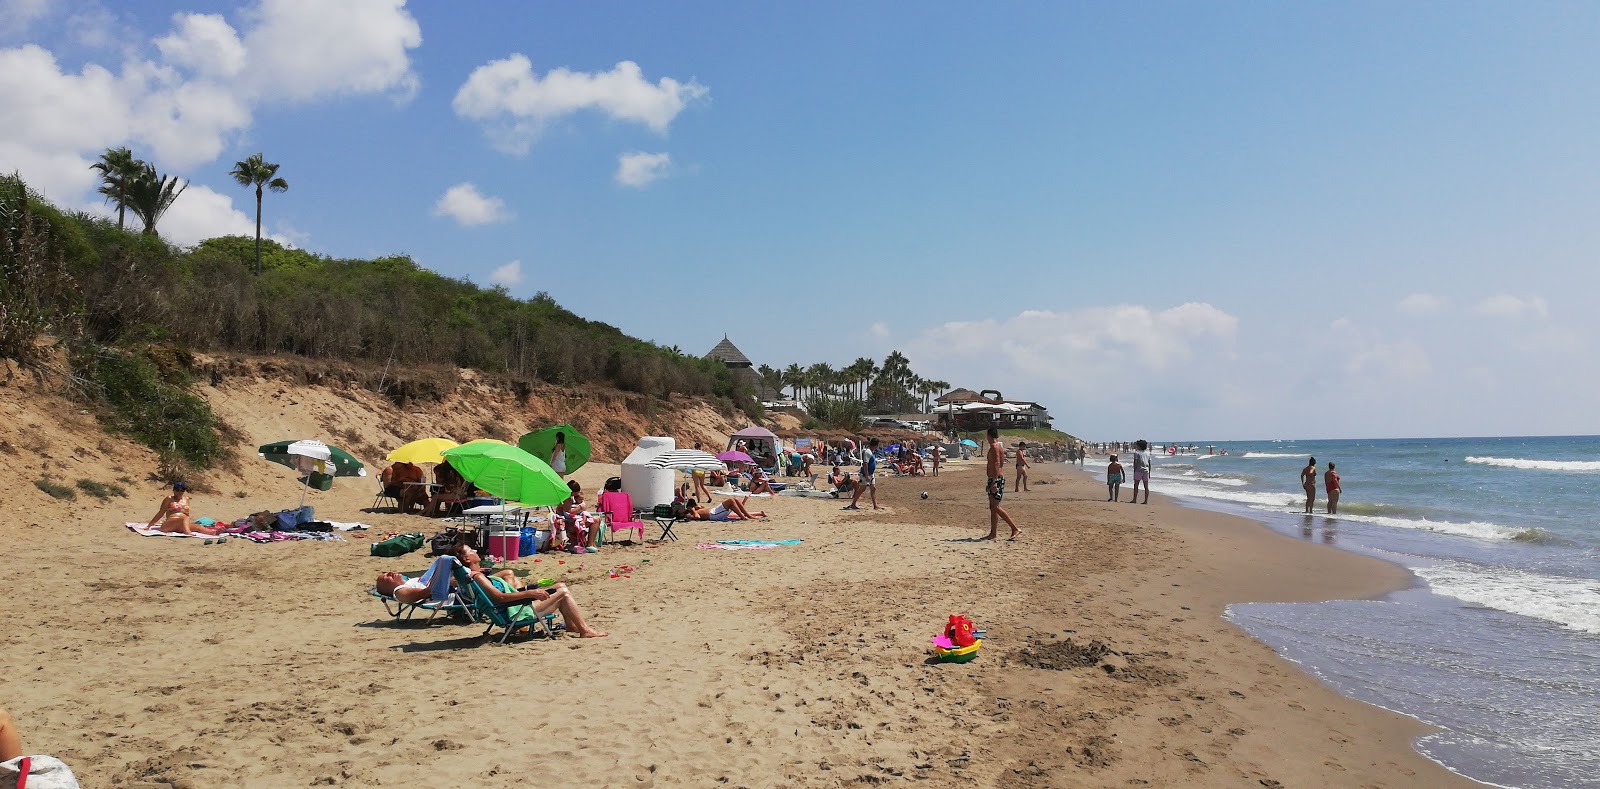 Playa de la Vibora'in fotoğrafı yeşil su yüzey ile